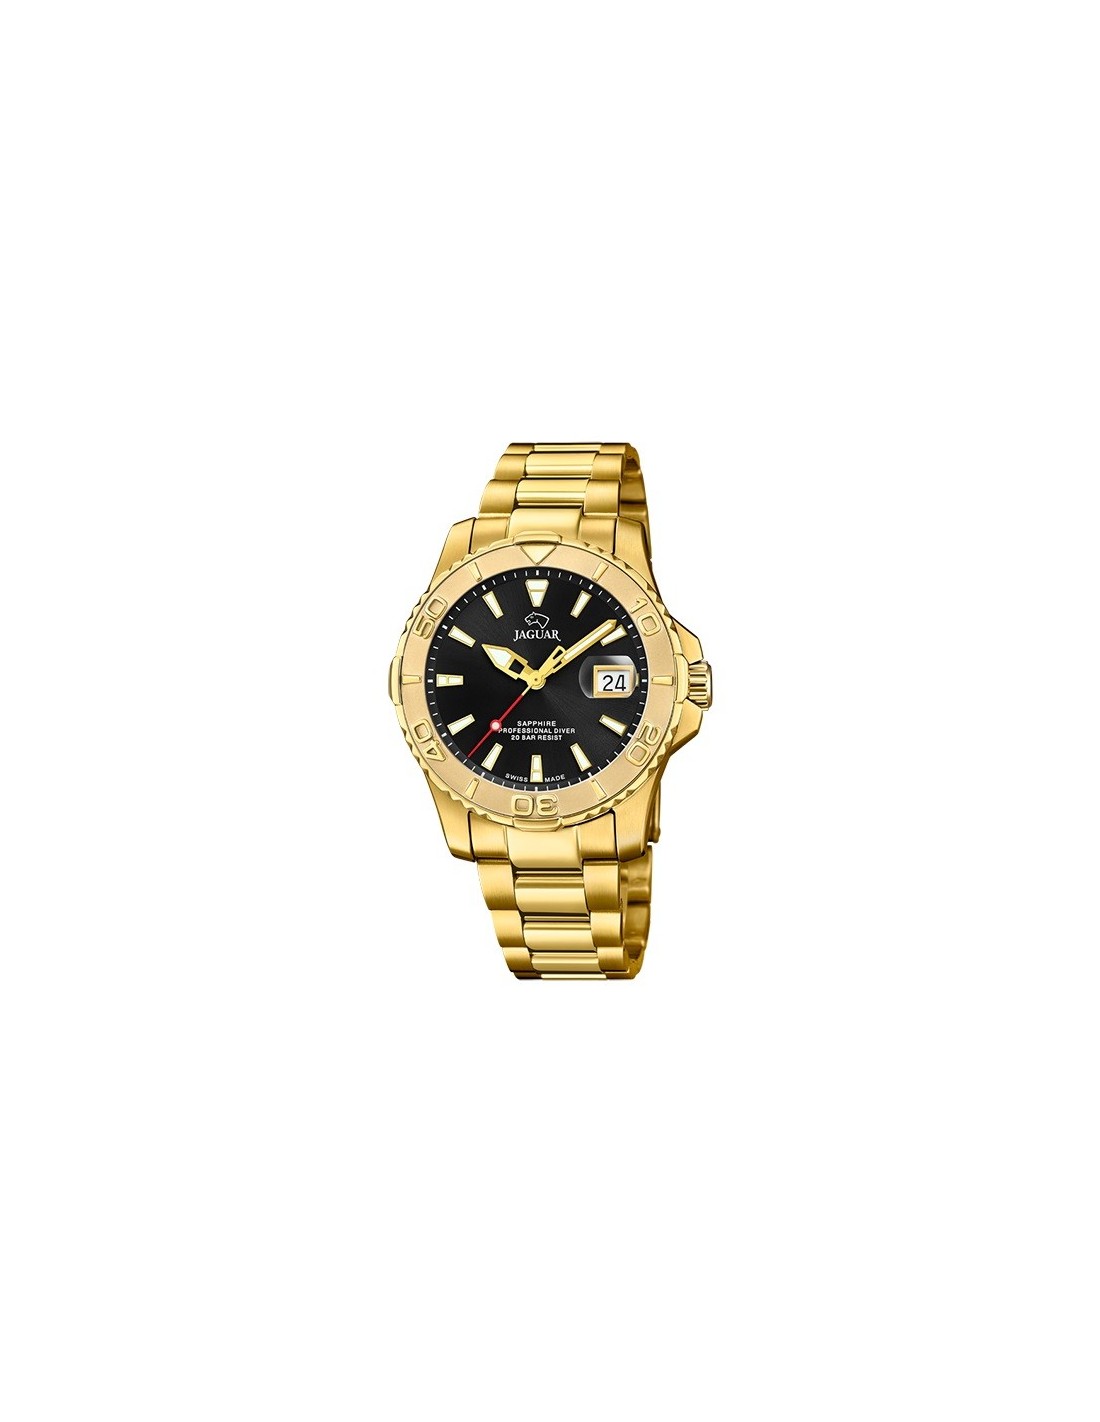 Relojes Jaguar a la venta: relojes elegantes para hombre